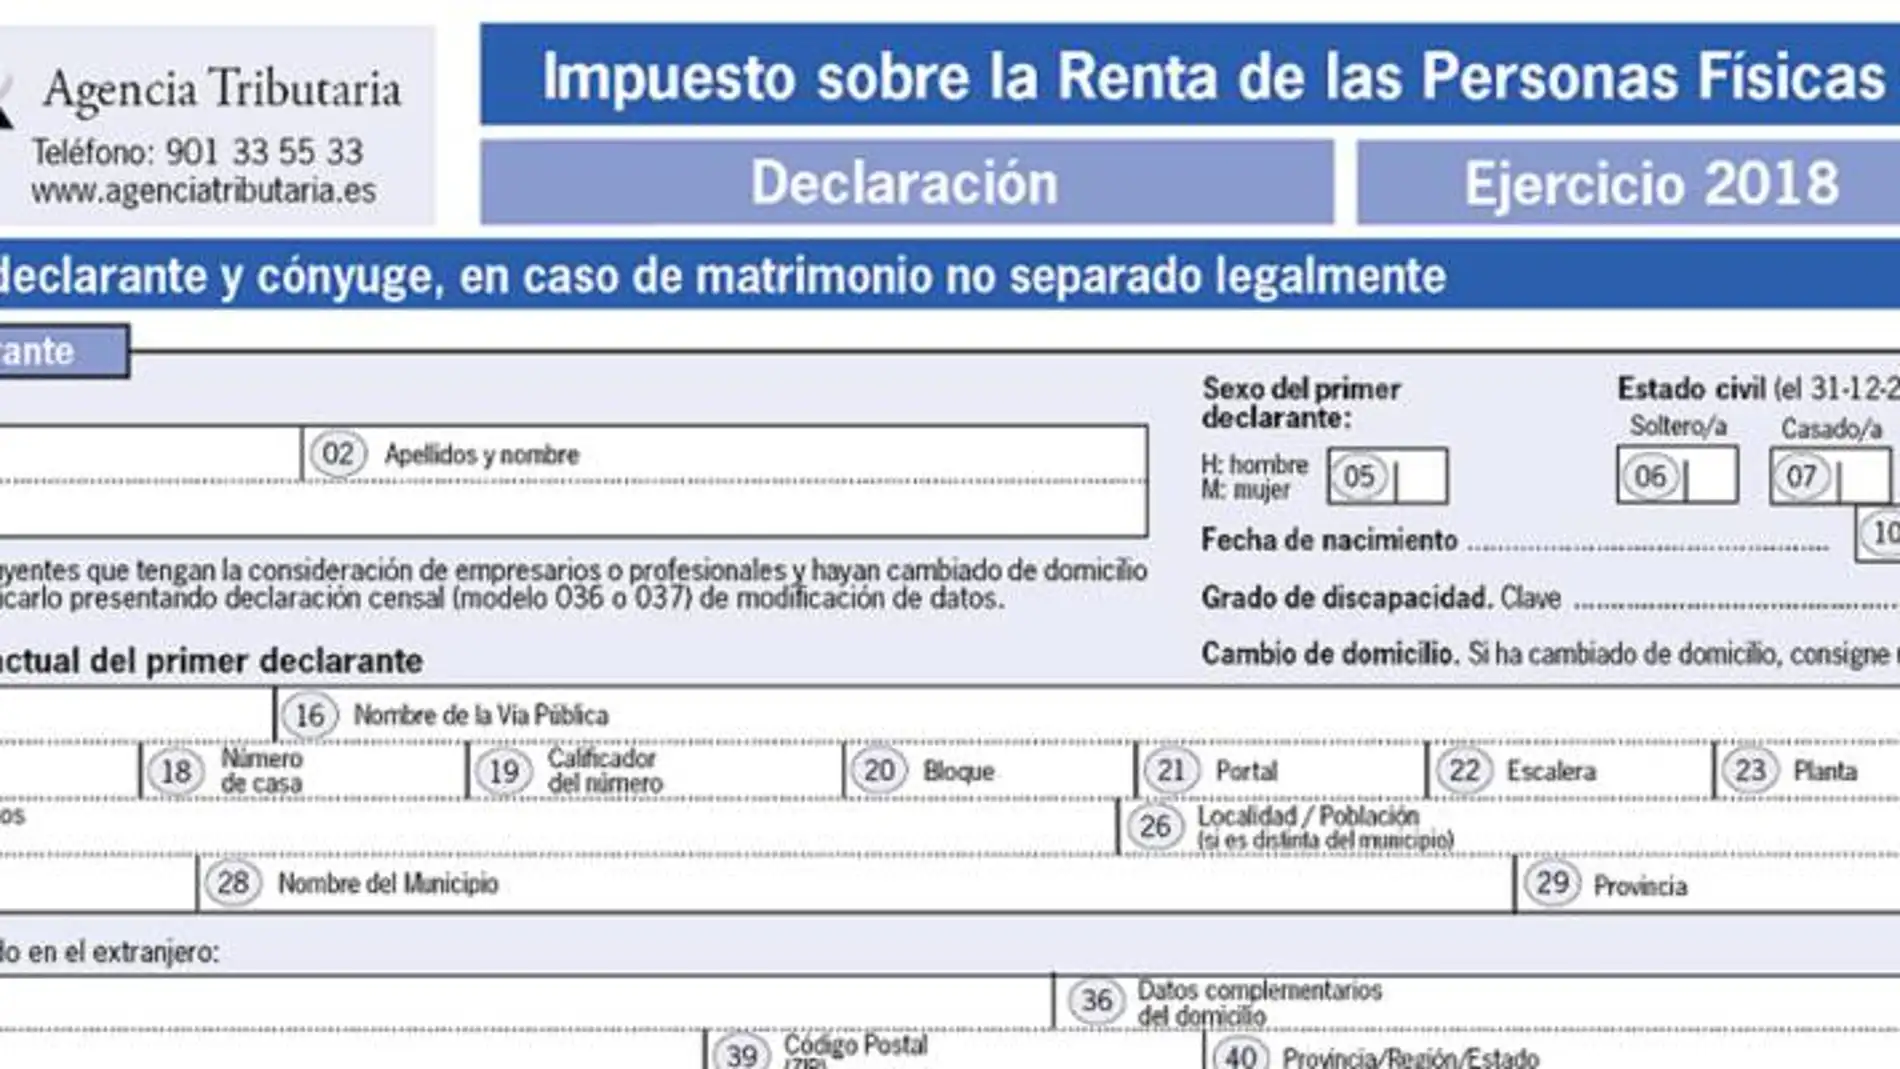 La Agencia Tributaria ha devuelto en Andalucía 478,9 millones de euros en tan solo un mes de la campaña de la renta